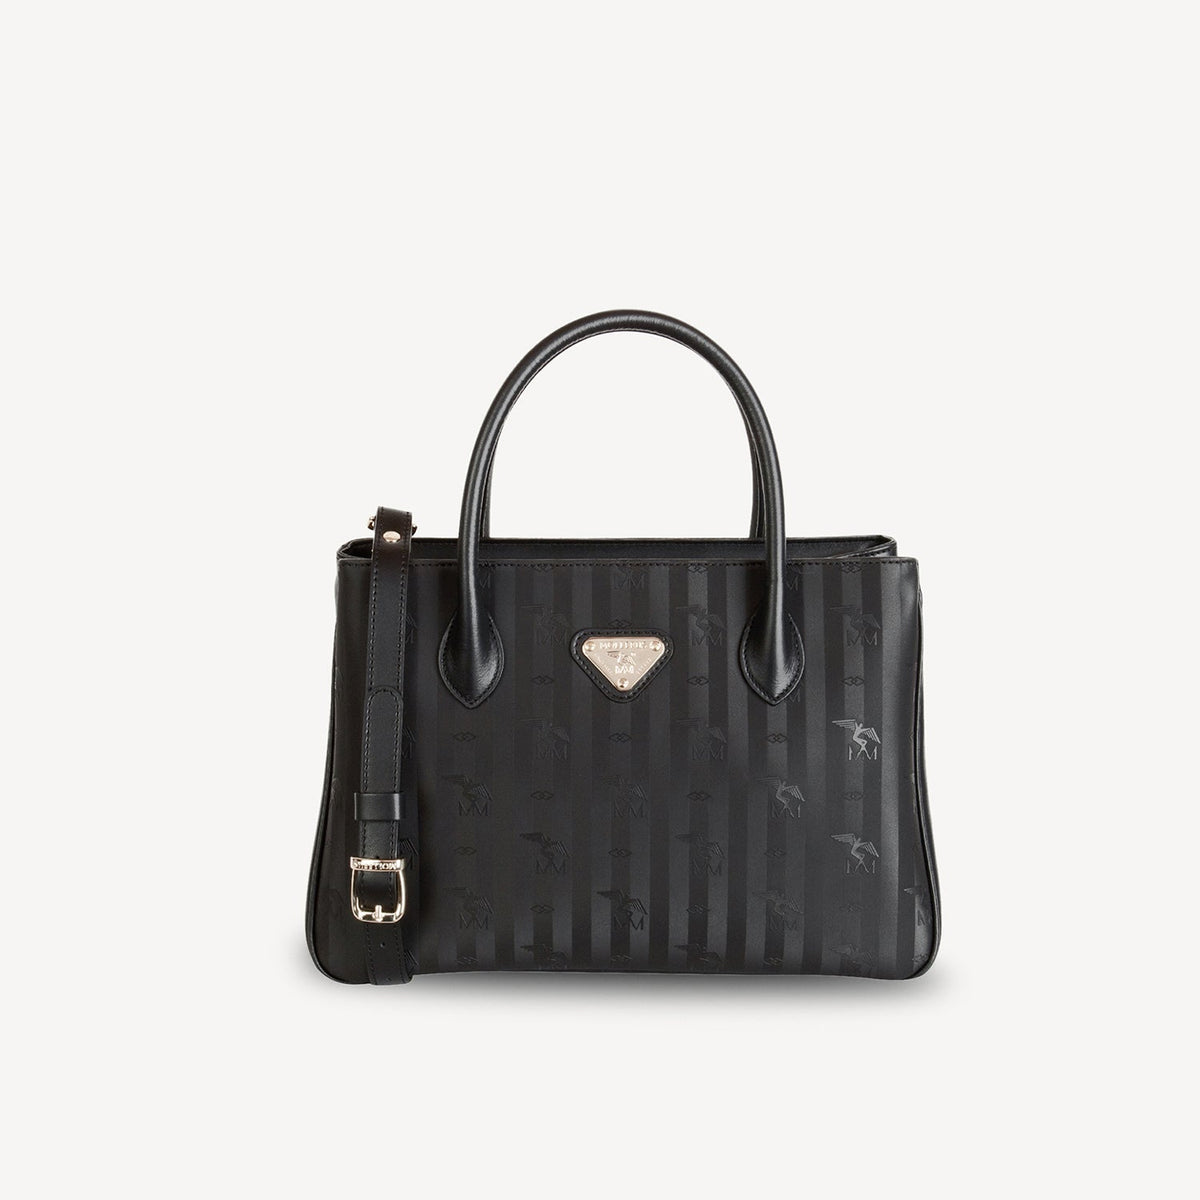 DONAT | handbag black/silver